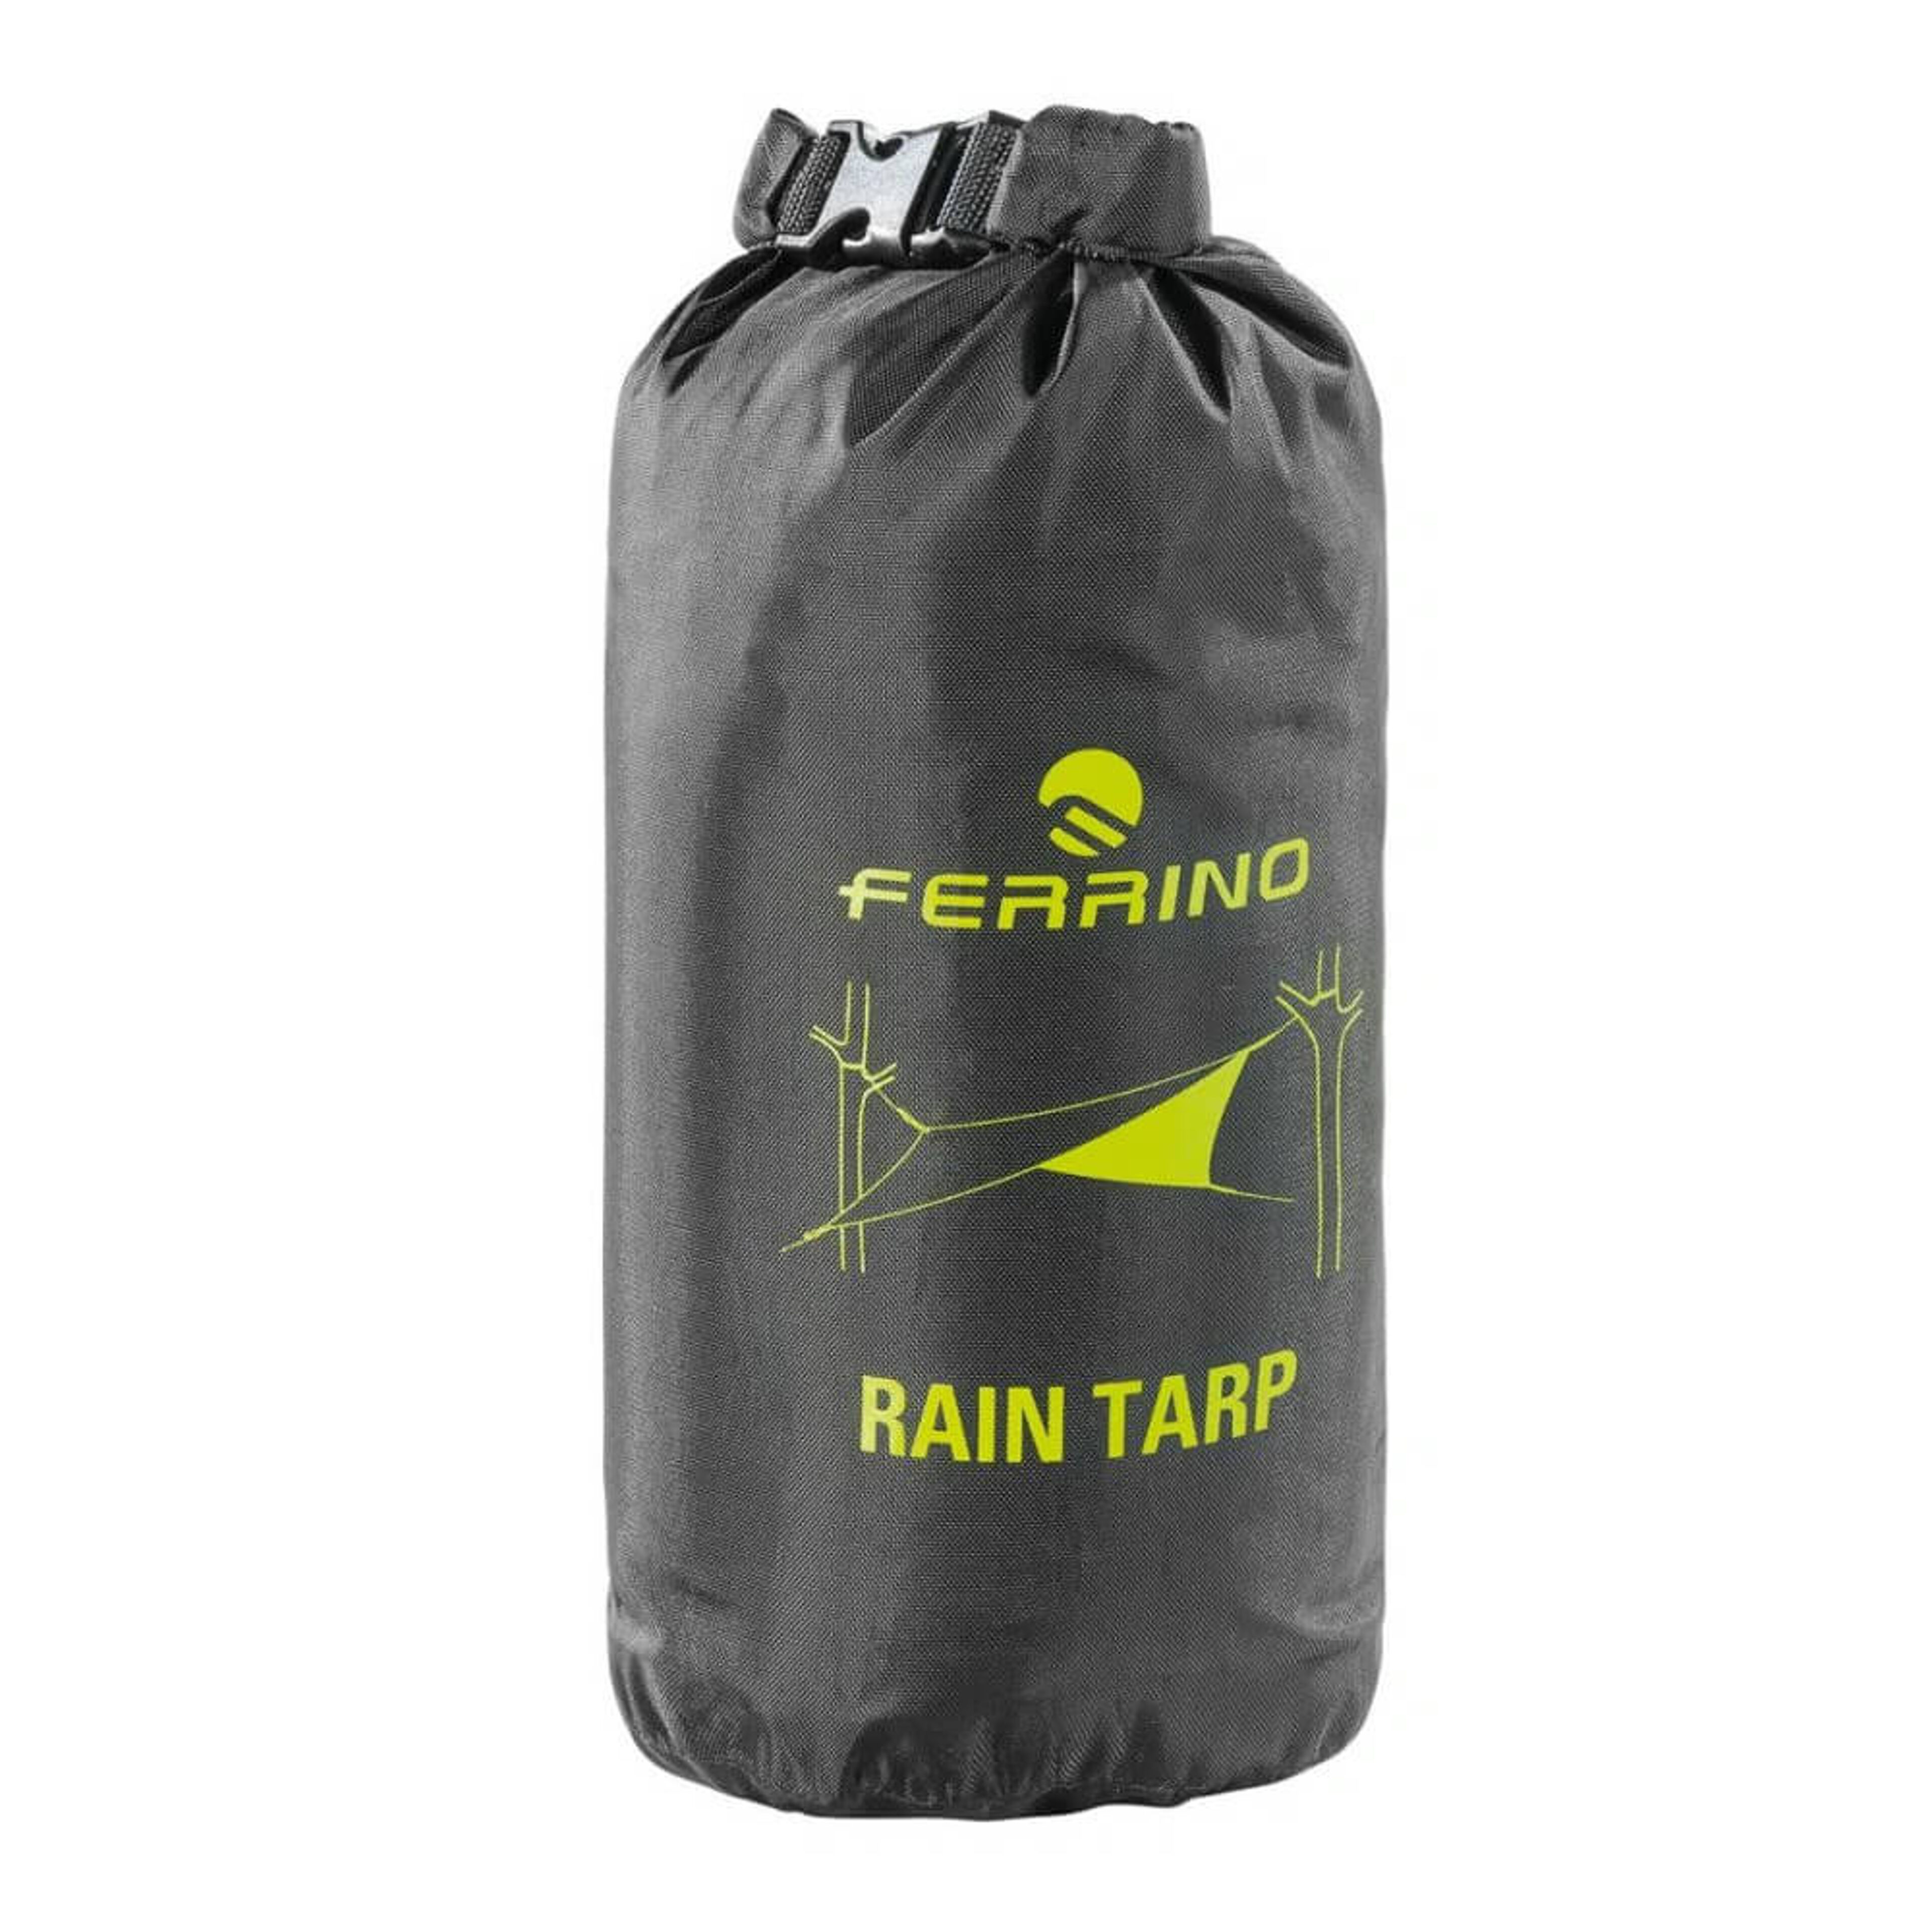 Ferrino Rain Tarp